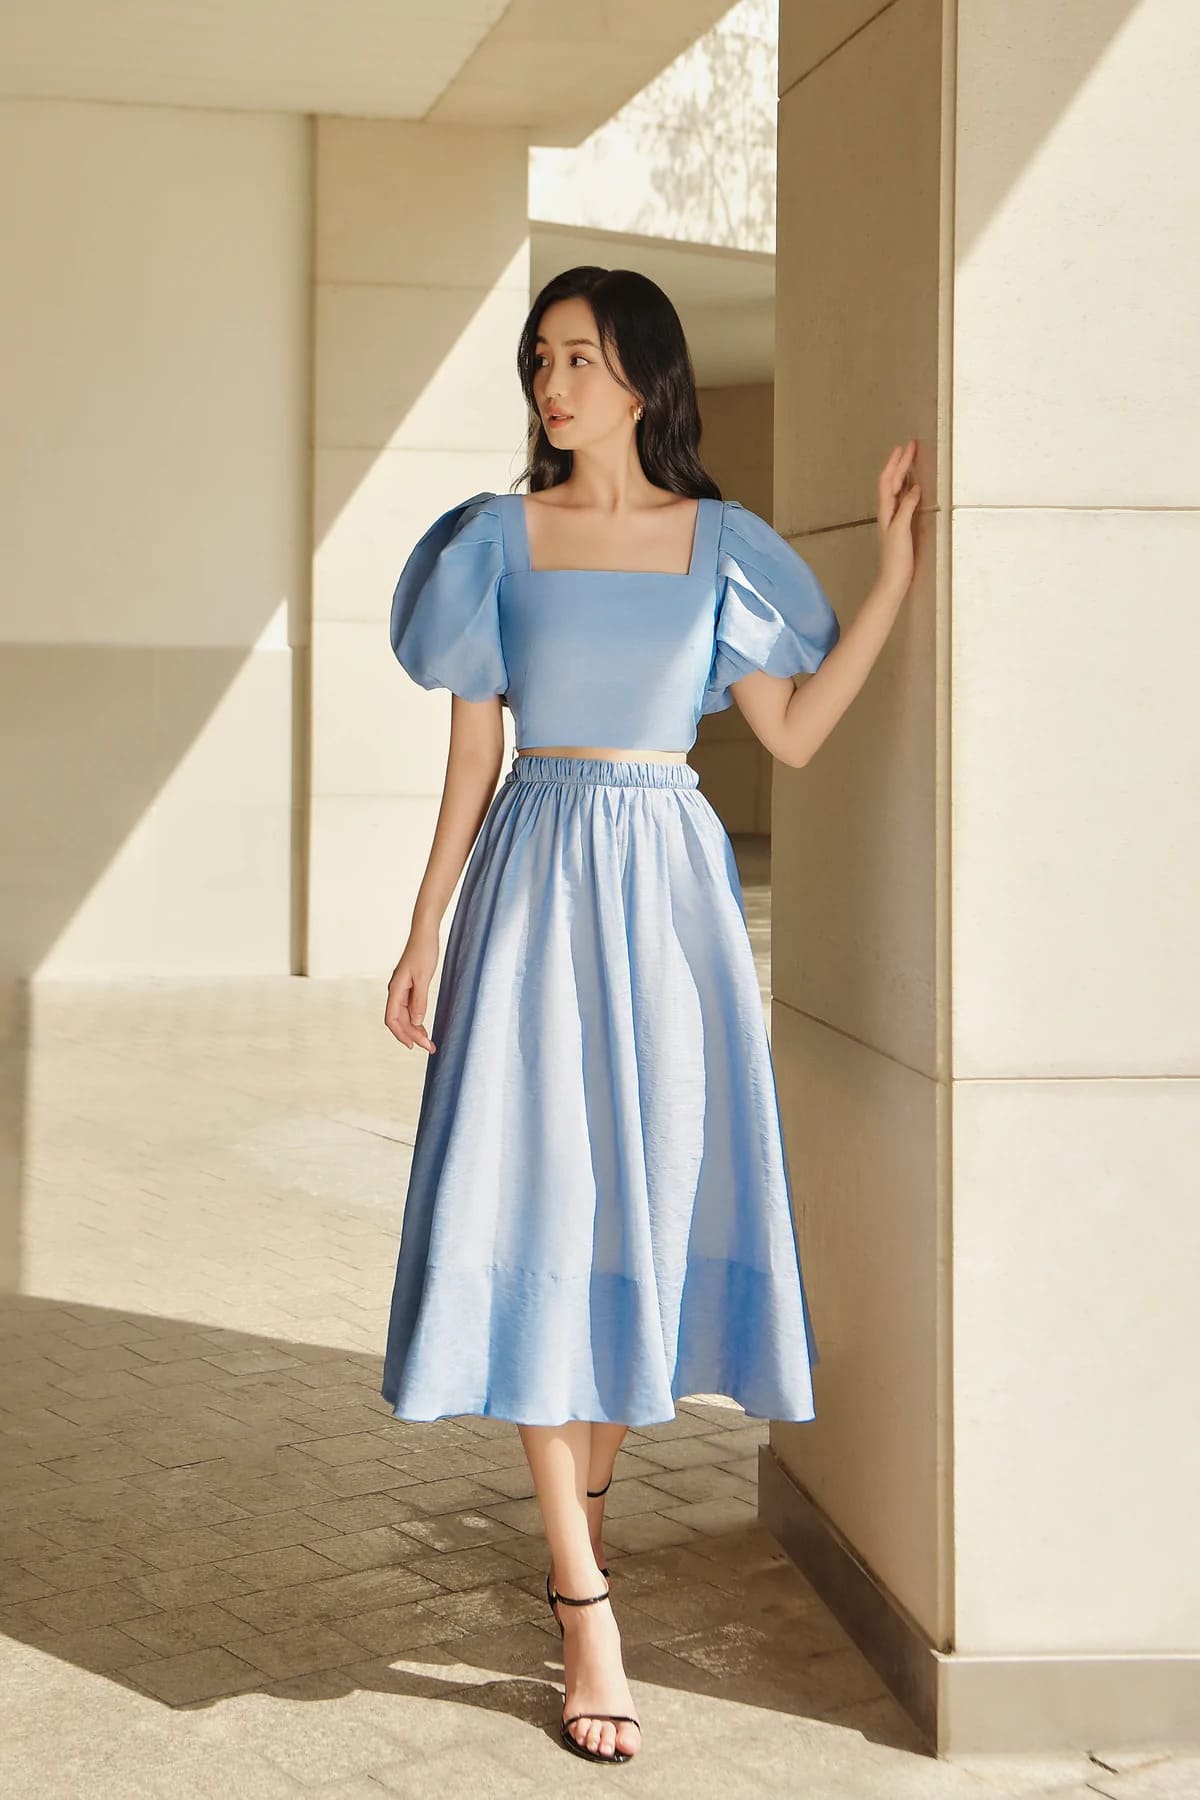 May áo cưới công chúa màu xanh Pastel 014 - Xưởng may áo cưới-KingBridal